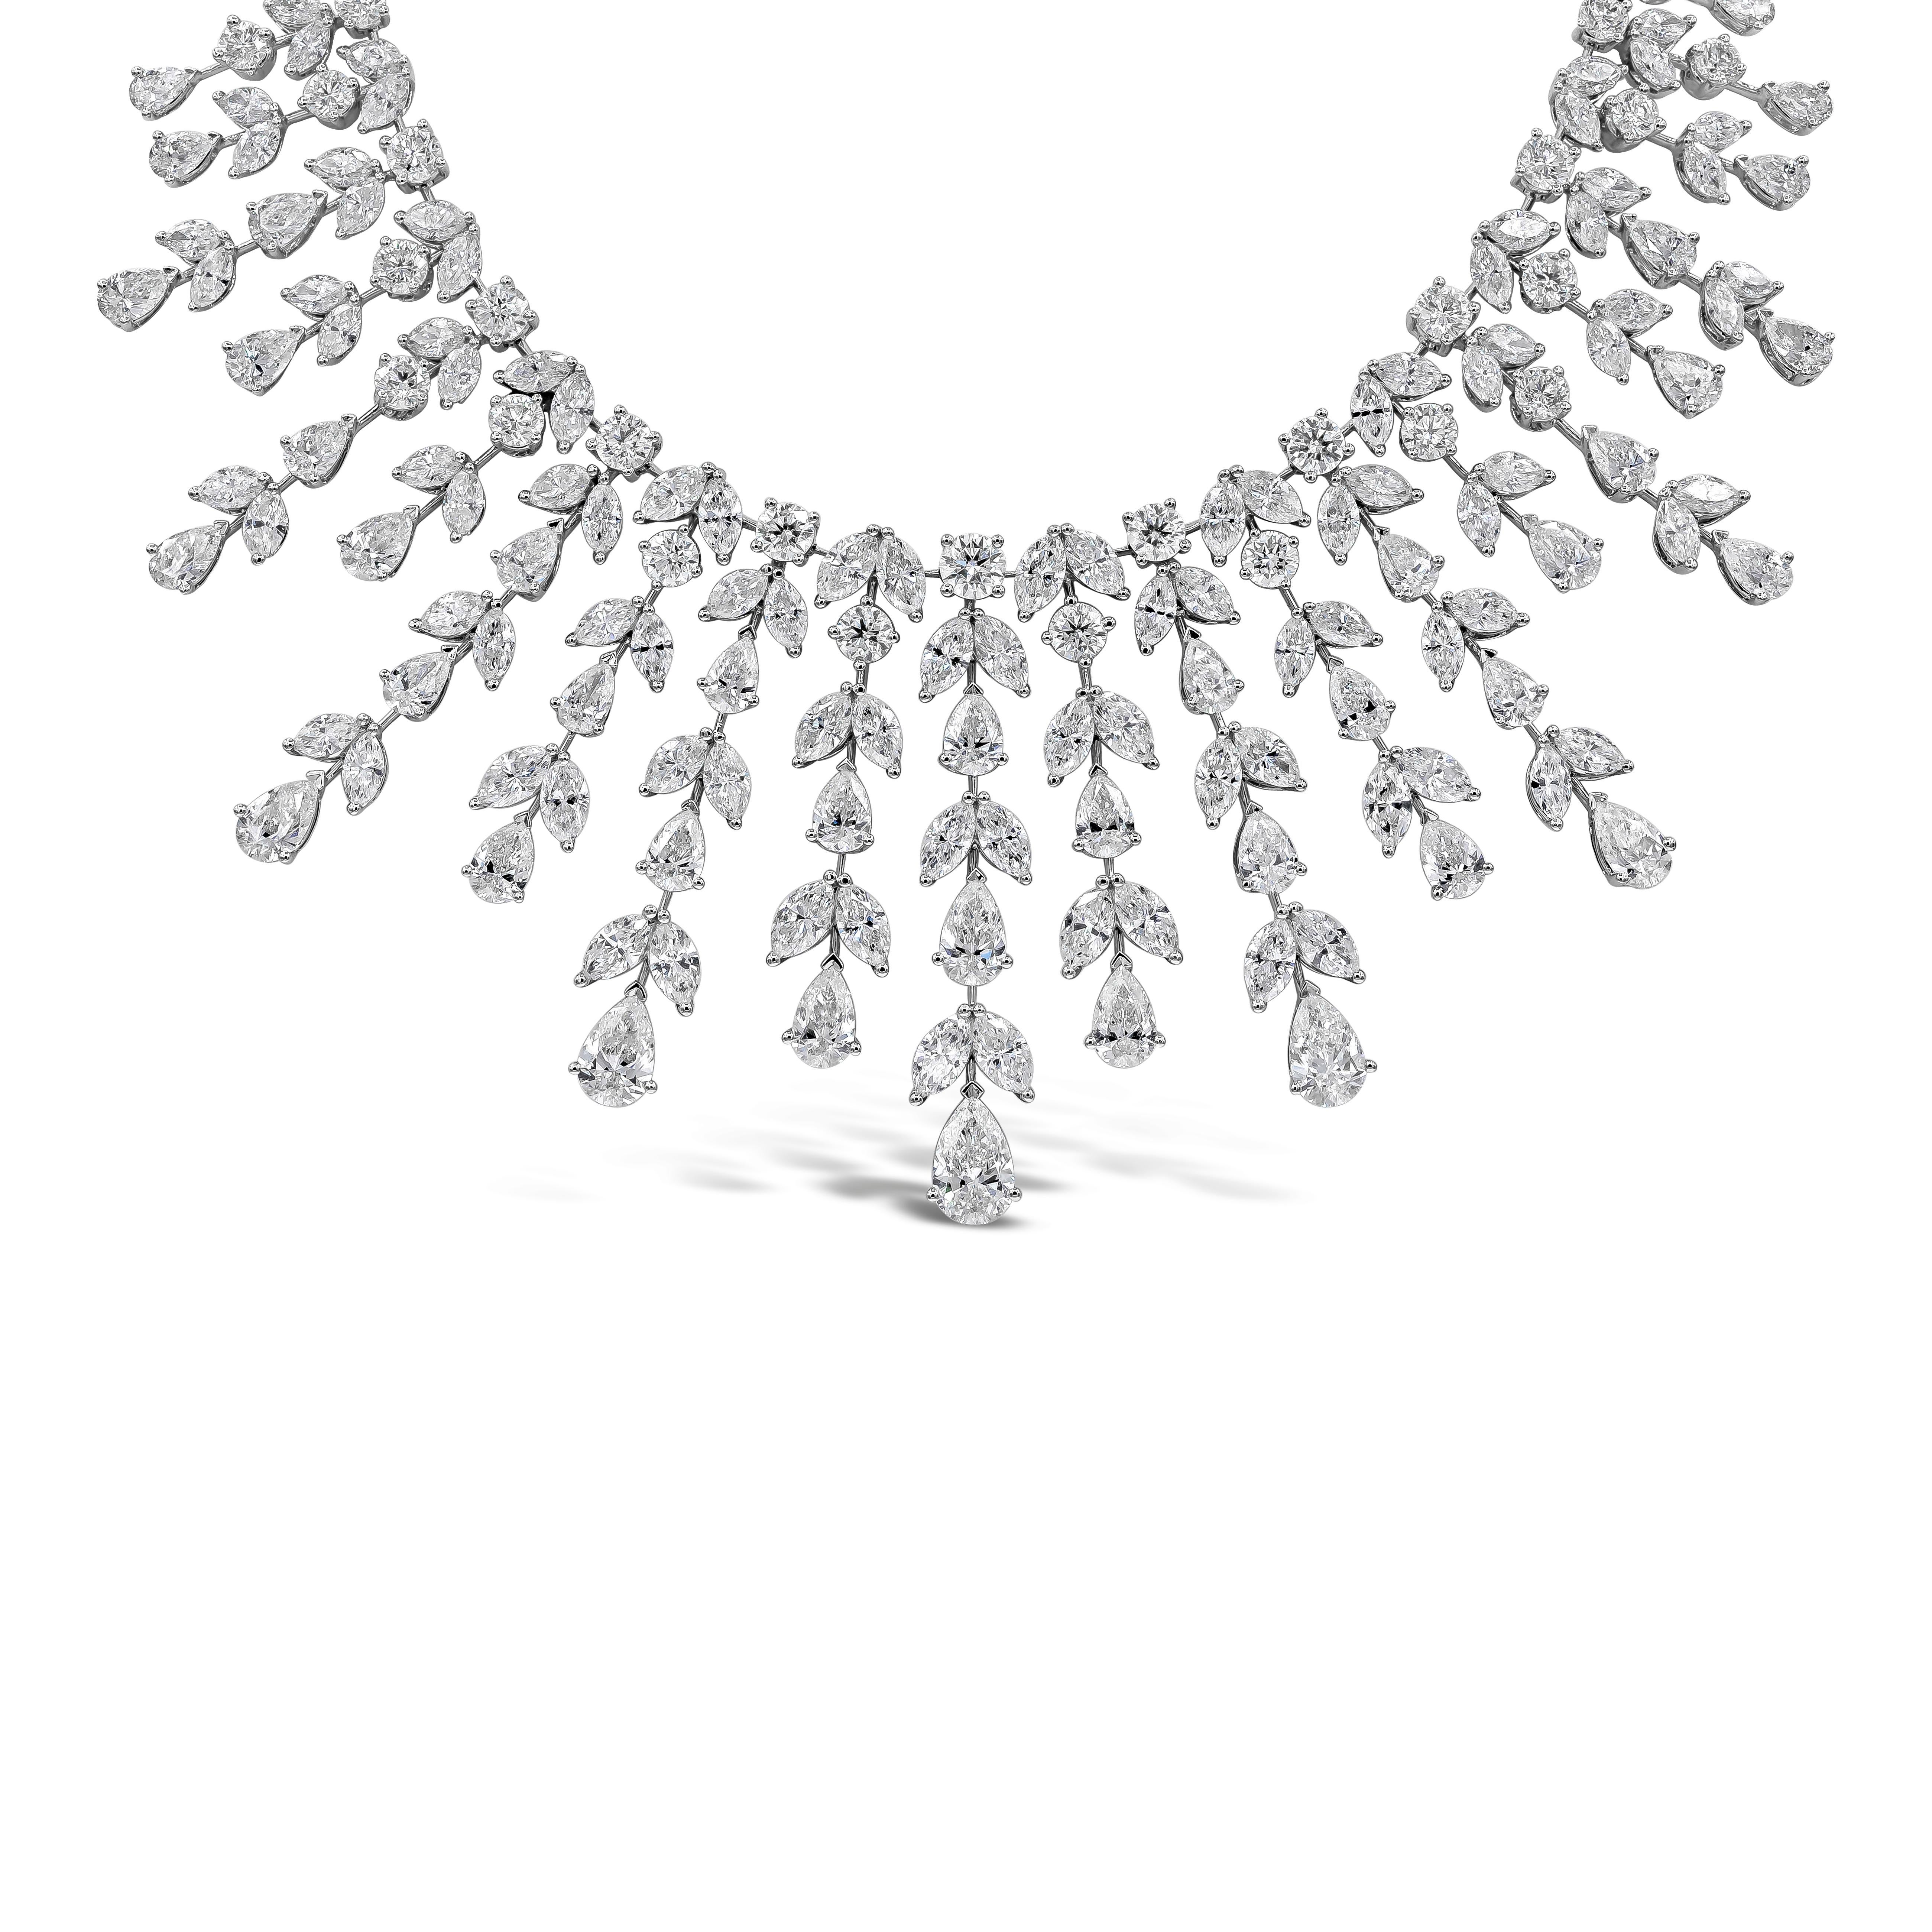 Elegante y bien elaborado collar de alta joyería que exhibe 307 diamantes de talla mixta con un peso total de 100,19 quilates. Exquisitamente engastada en un intrincado diseño de flecos, elegantemente elaborada en oro blanco de 18 quilates.
